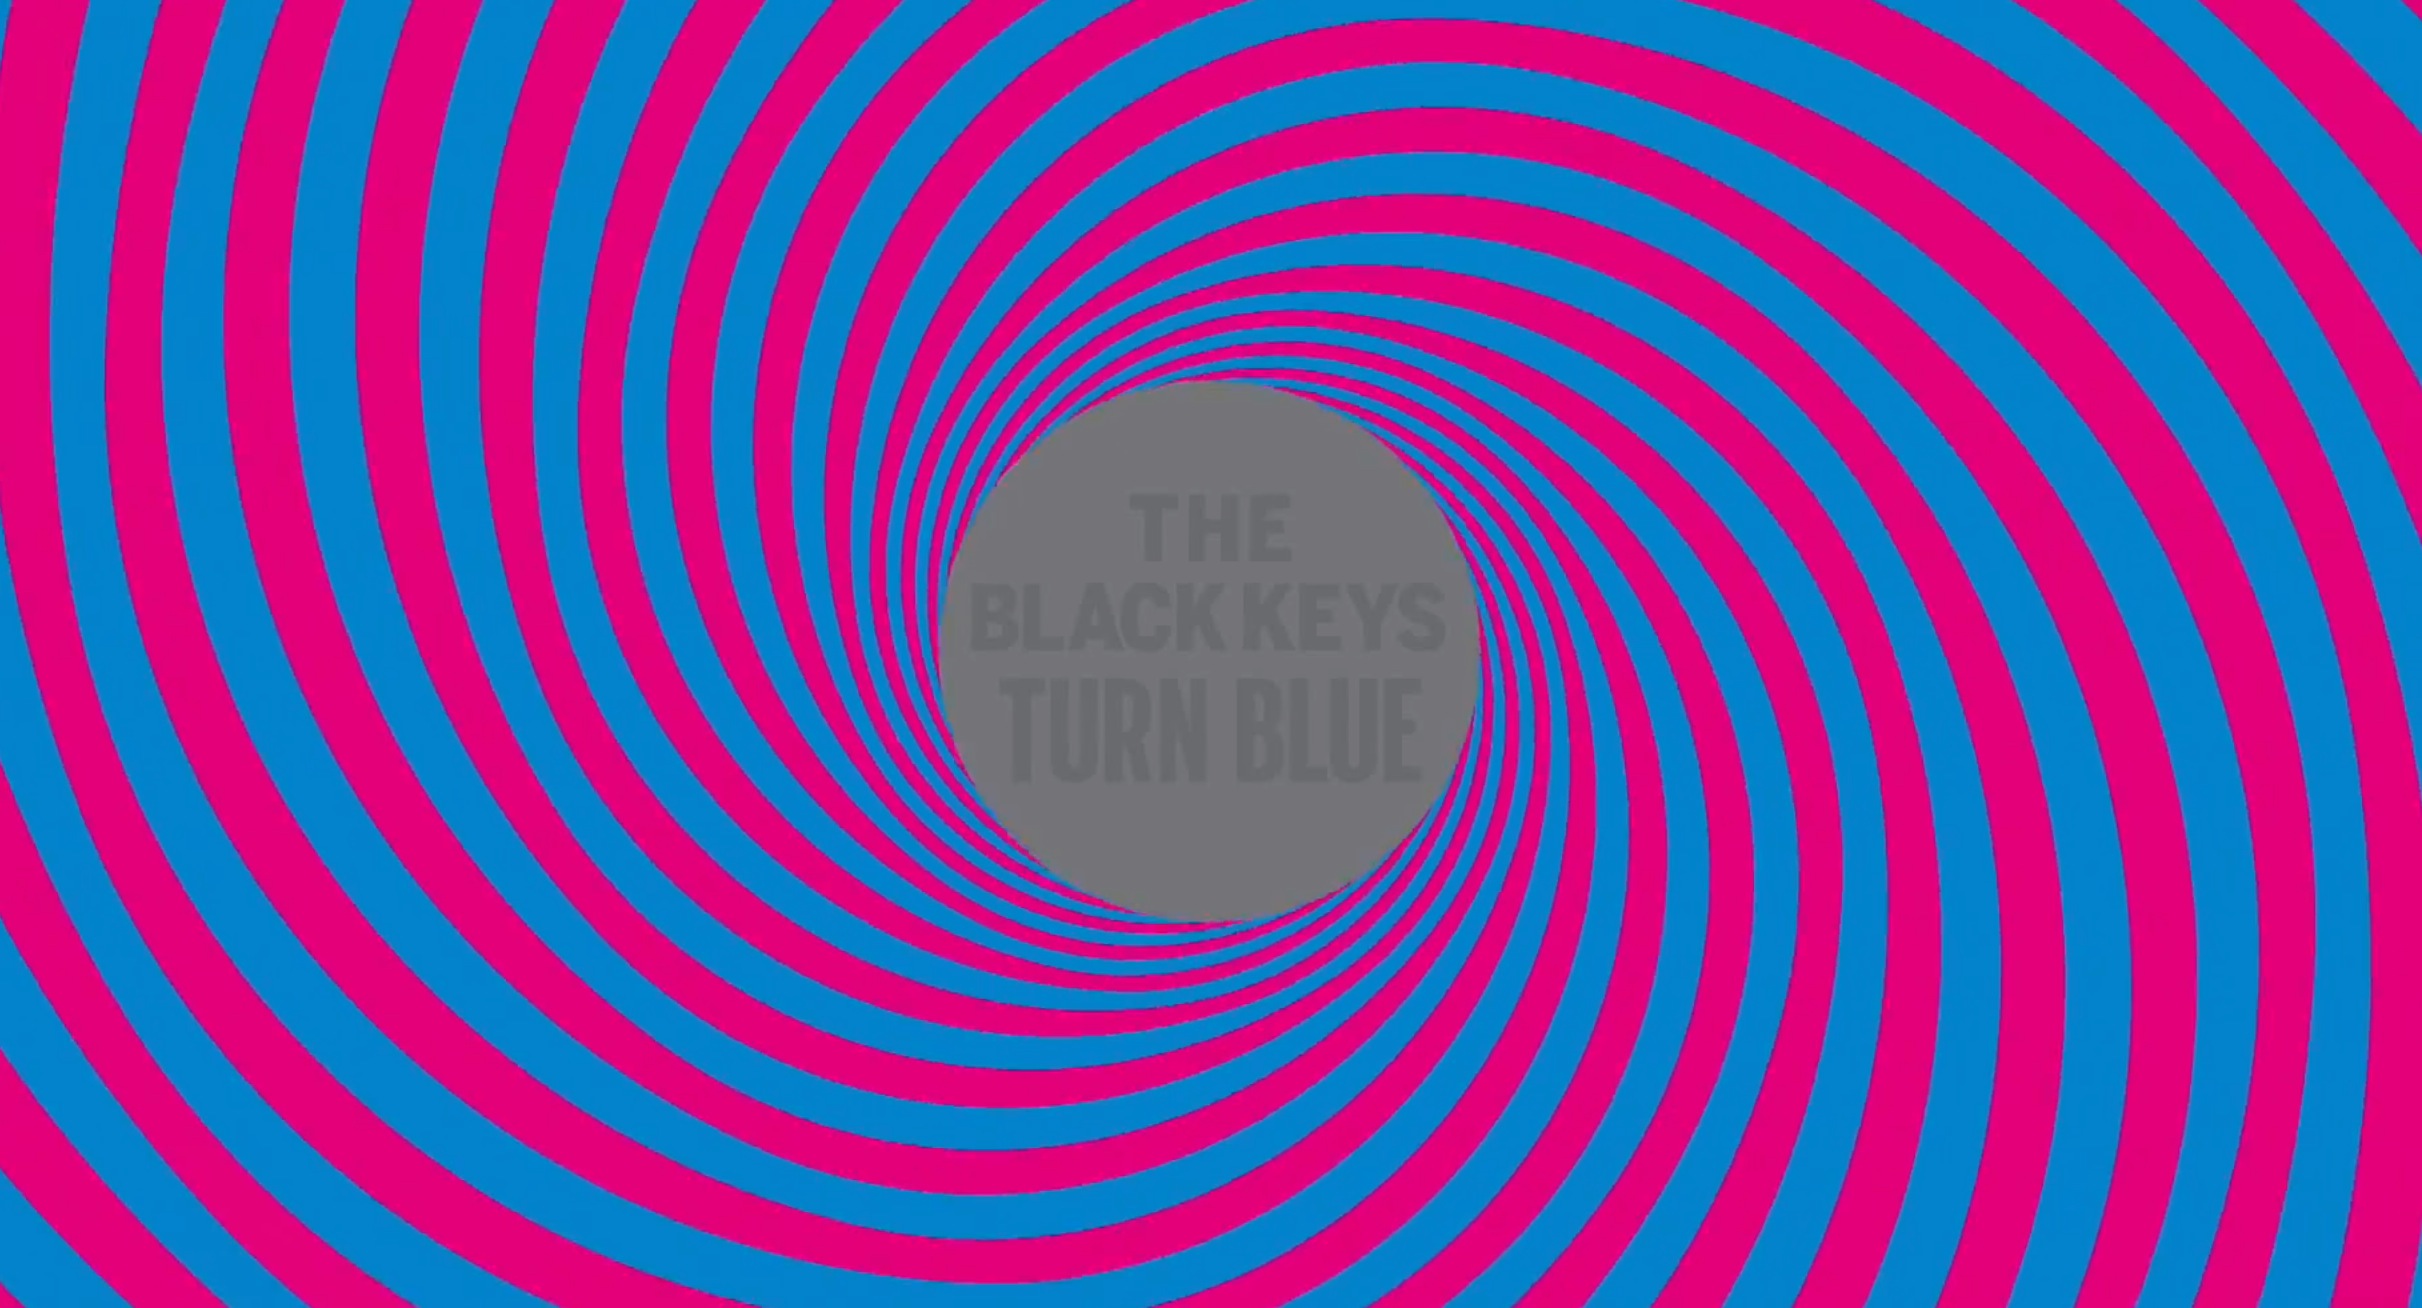 Mp3 The Black Keys - Fever